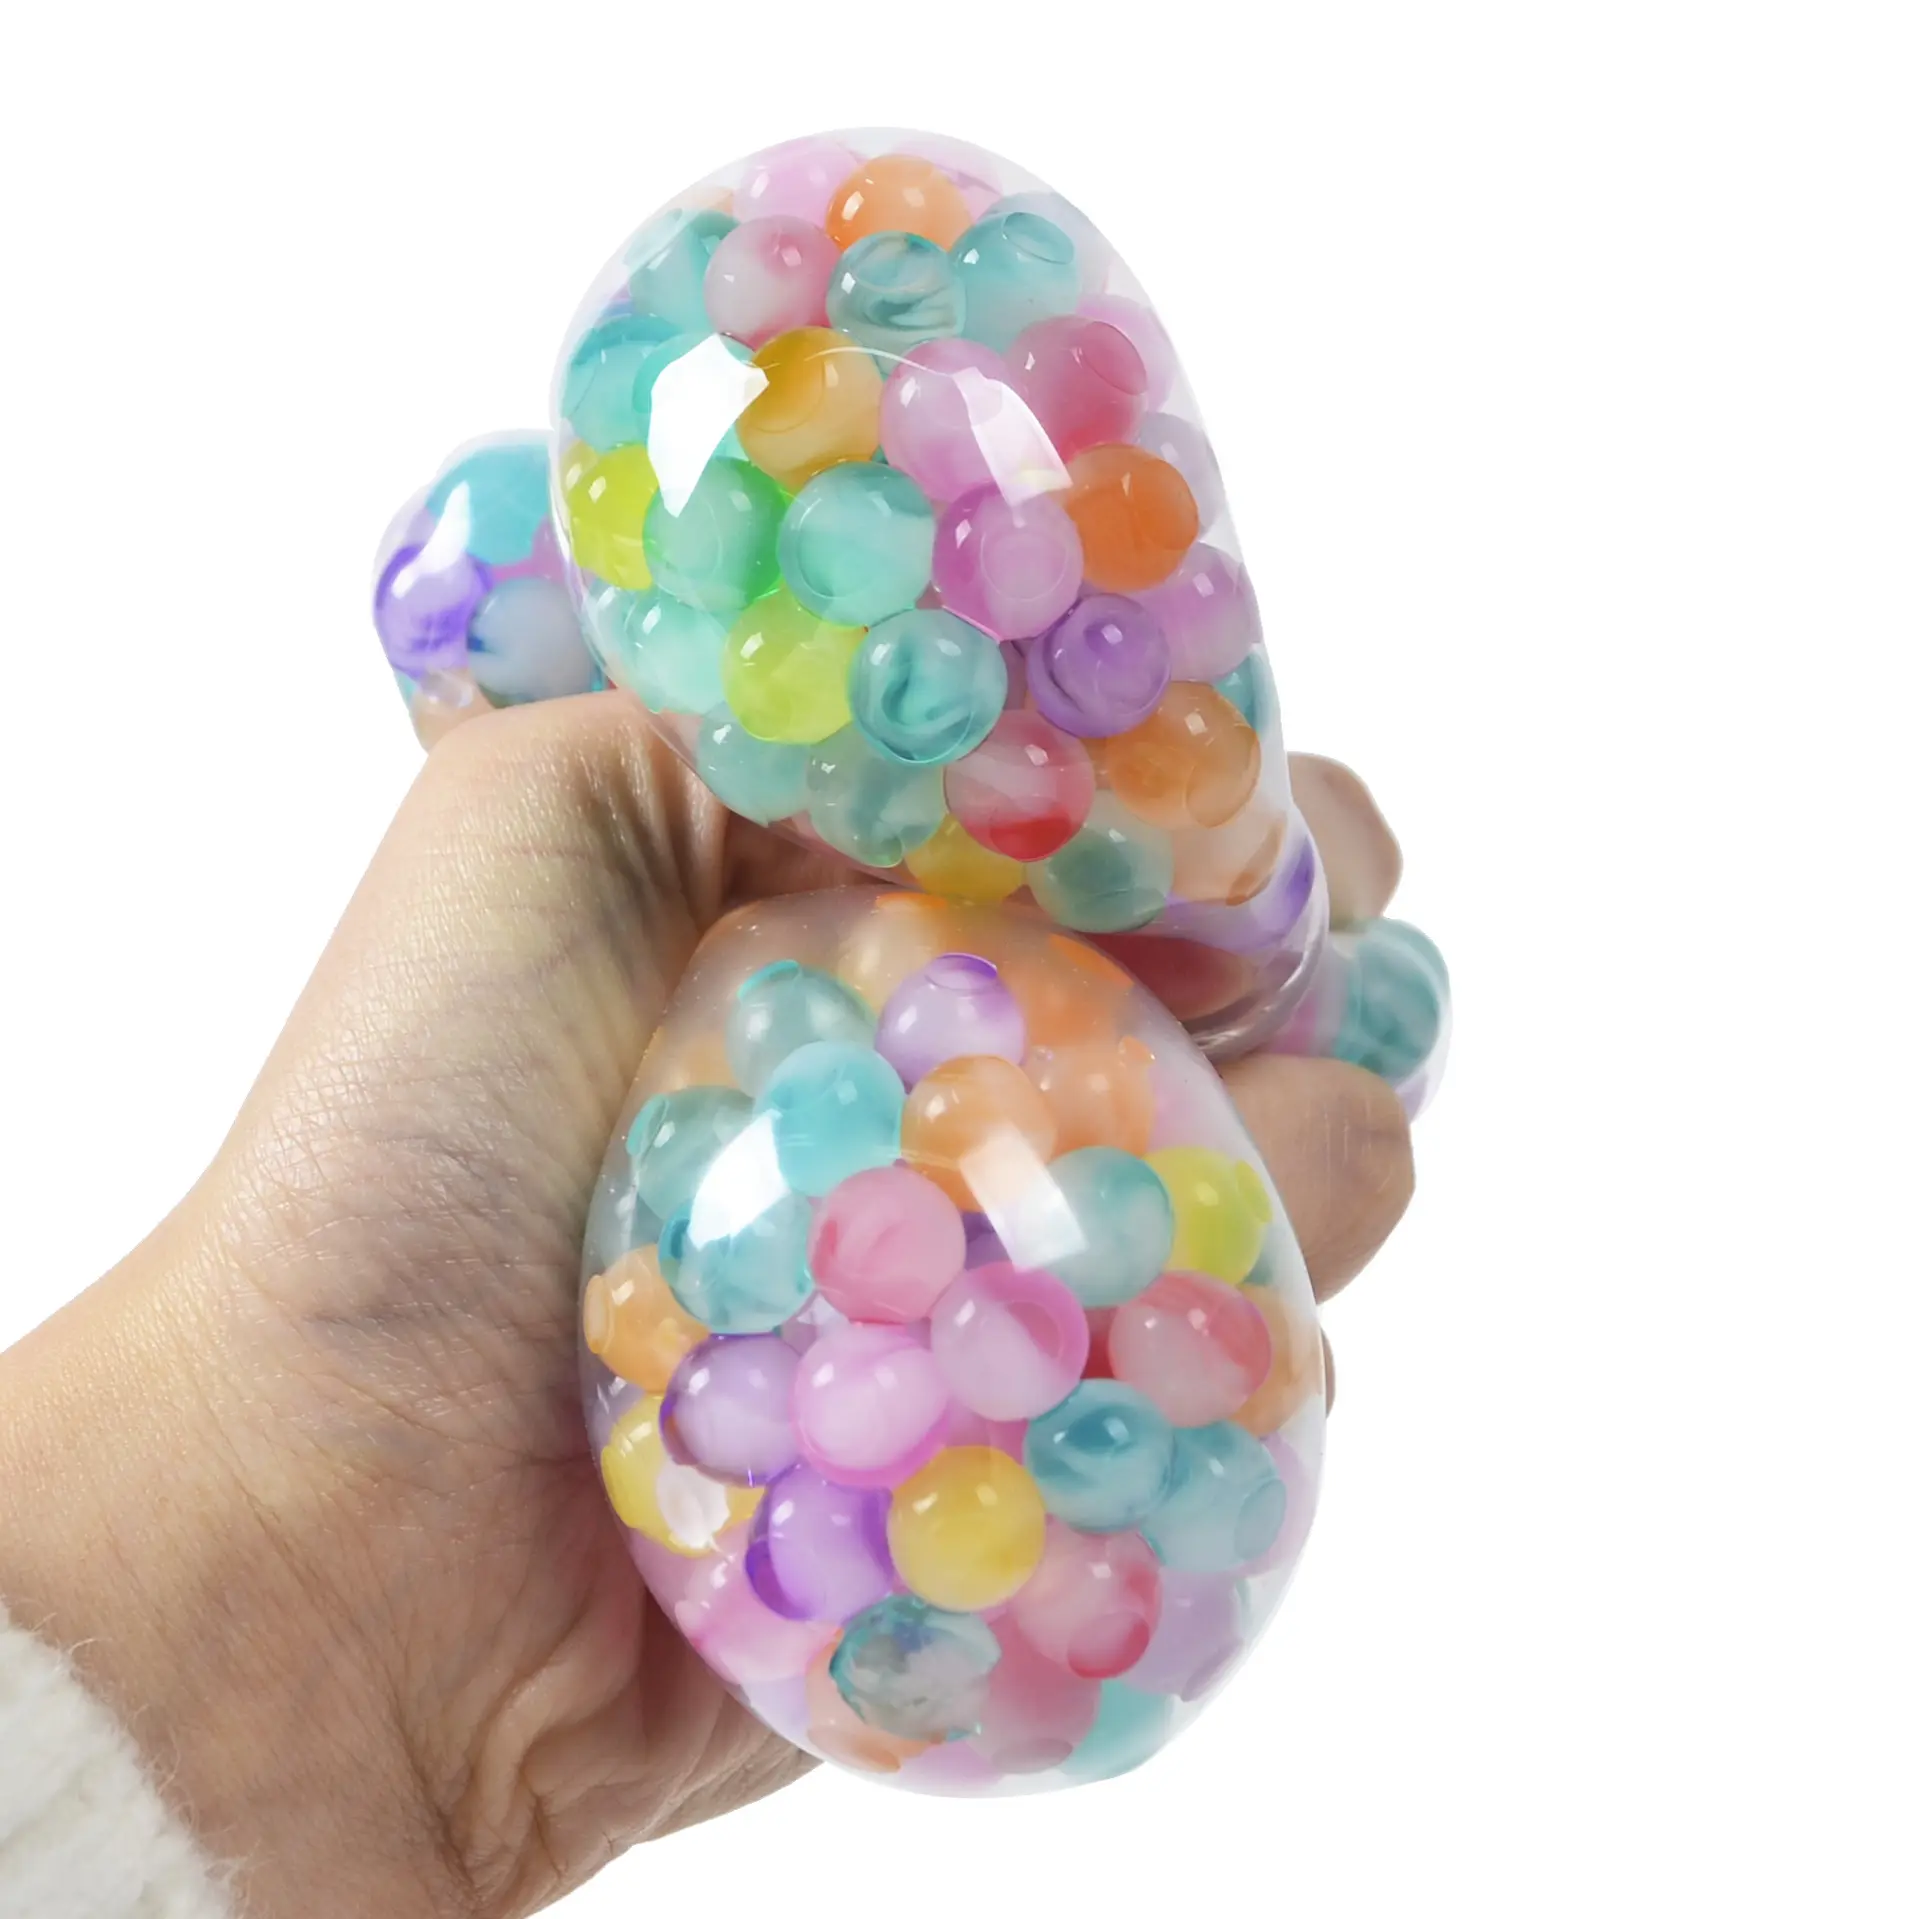 6cm Squeeze Trauben ball Verkaufs spielzeug Niedlicher Gummi Anti Stress Vent 6cm Bunte Perlen Ball Kunststoff TPR Spielzeug für Kinder